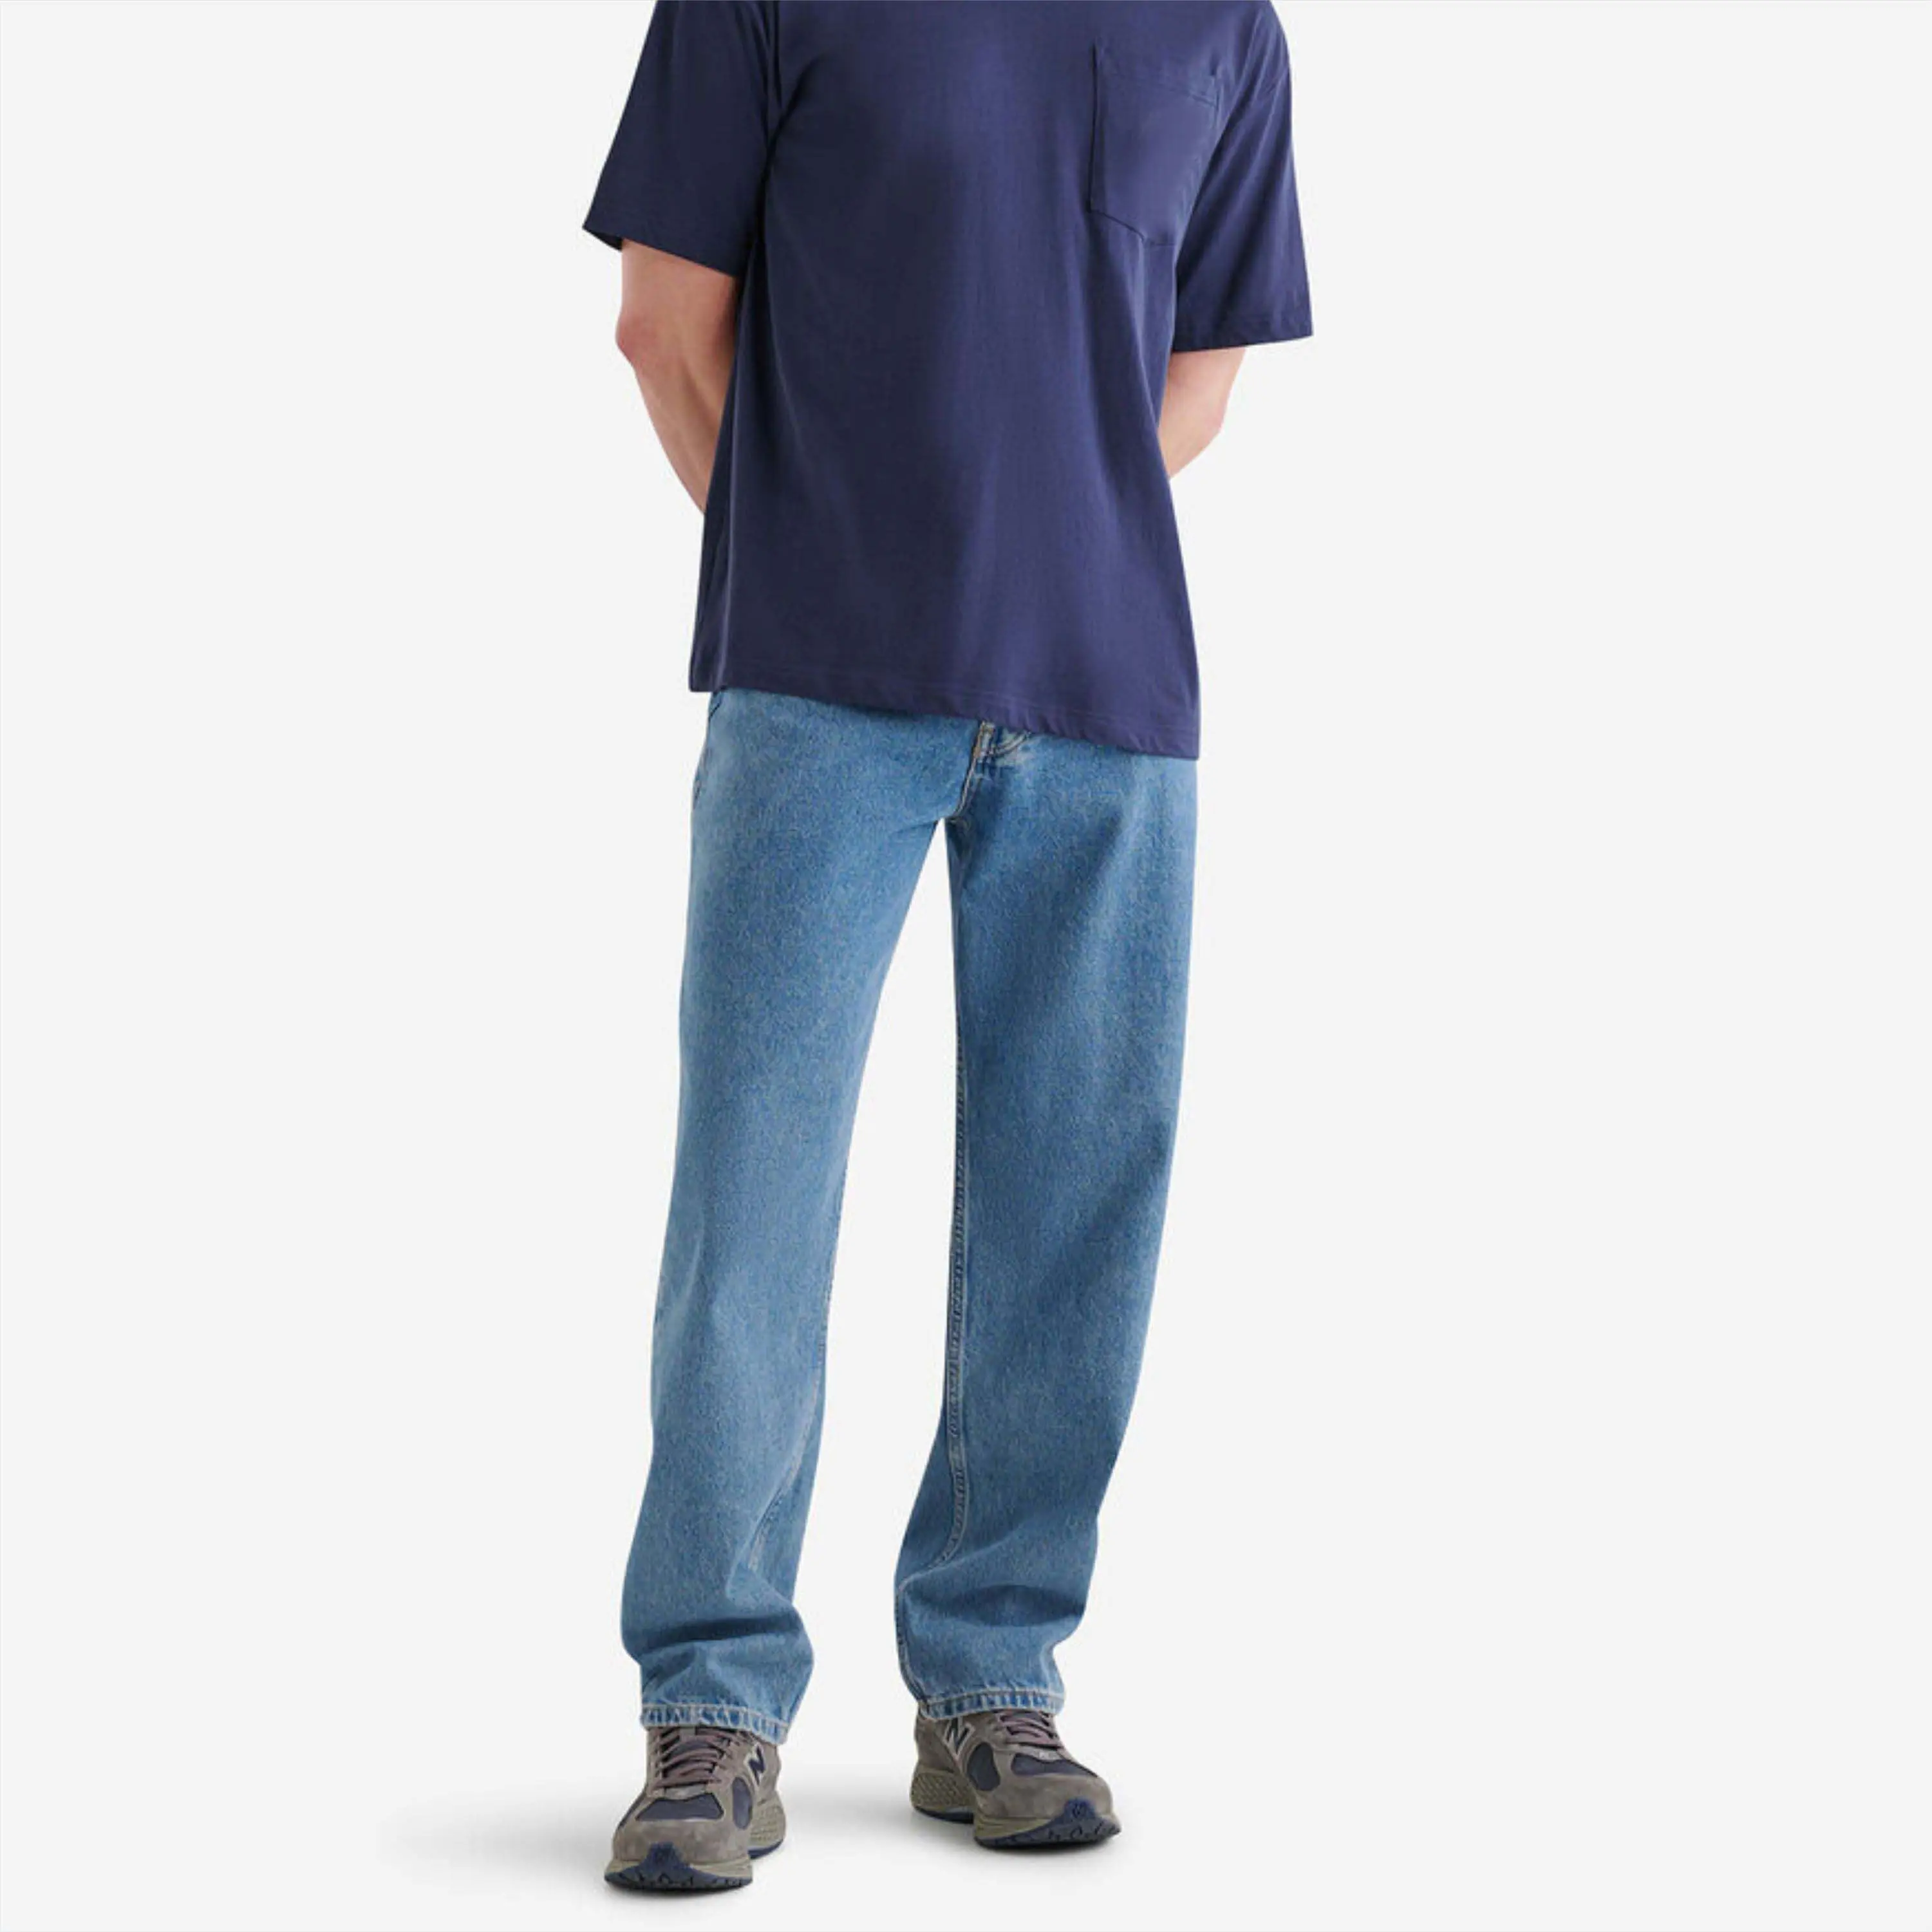 T-shirt tascabile da uomo resistente-tessuto leggero e traspirante, ideale per abbigliamento da lavoro e attività quotidiane